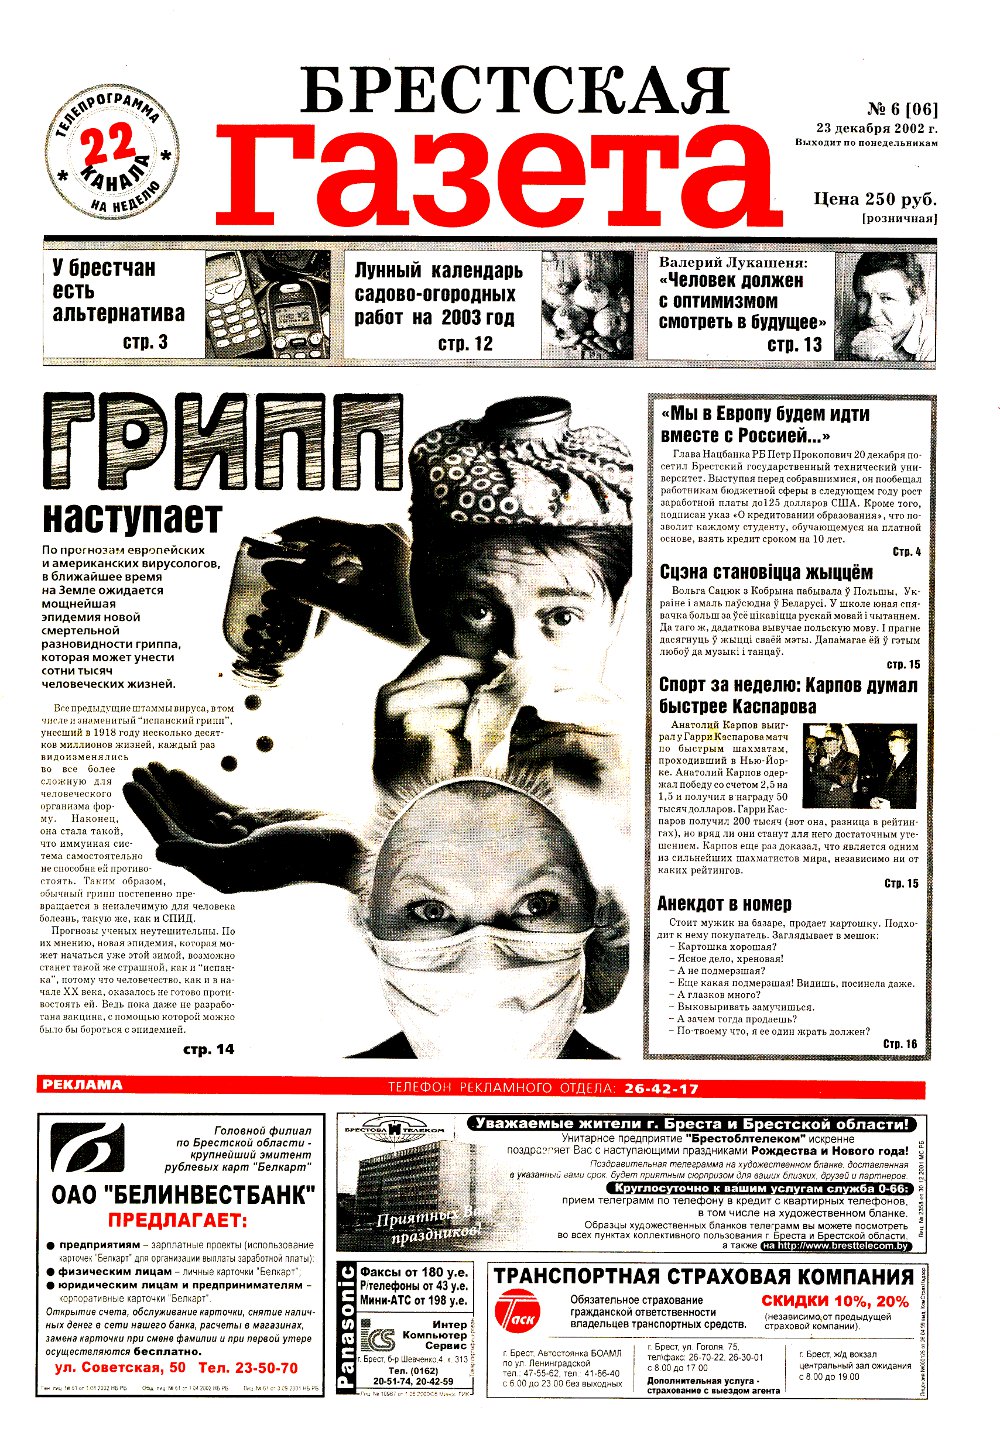 Брестская газета 6/2002